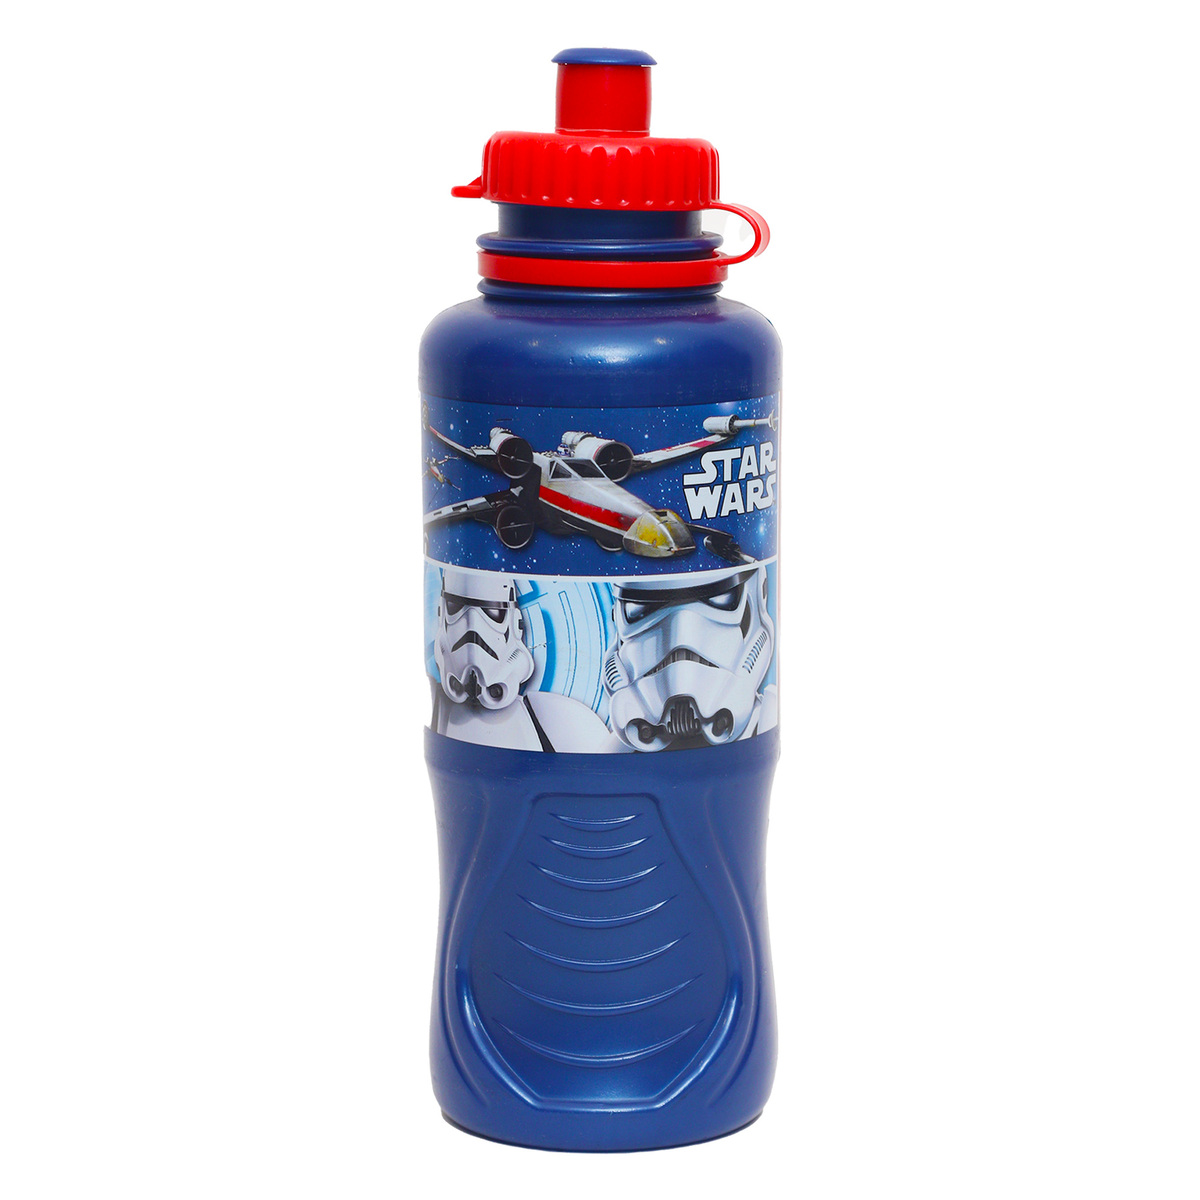 Star Wars Water Bottle + Lunch Box